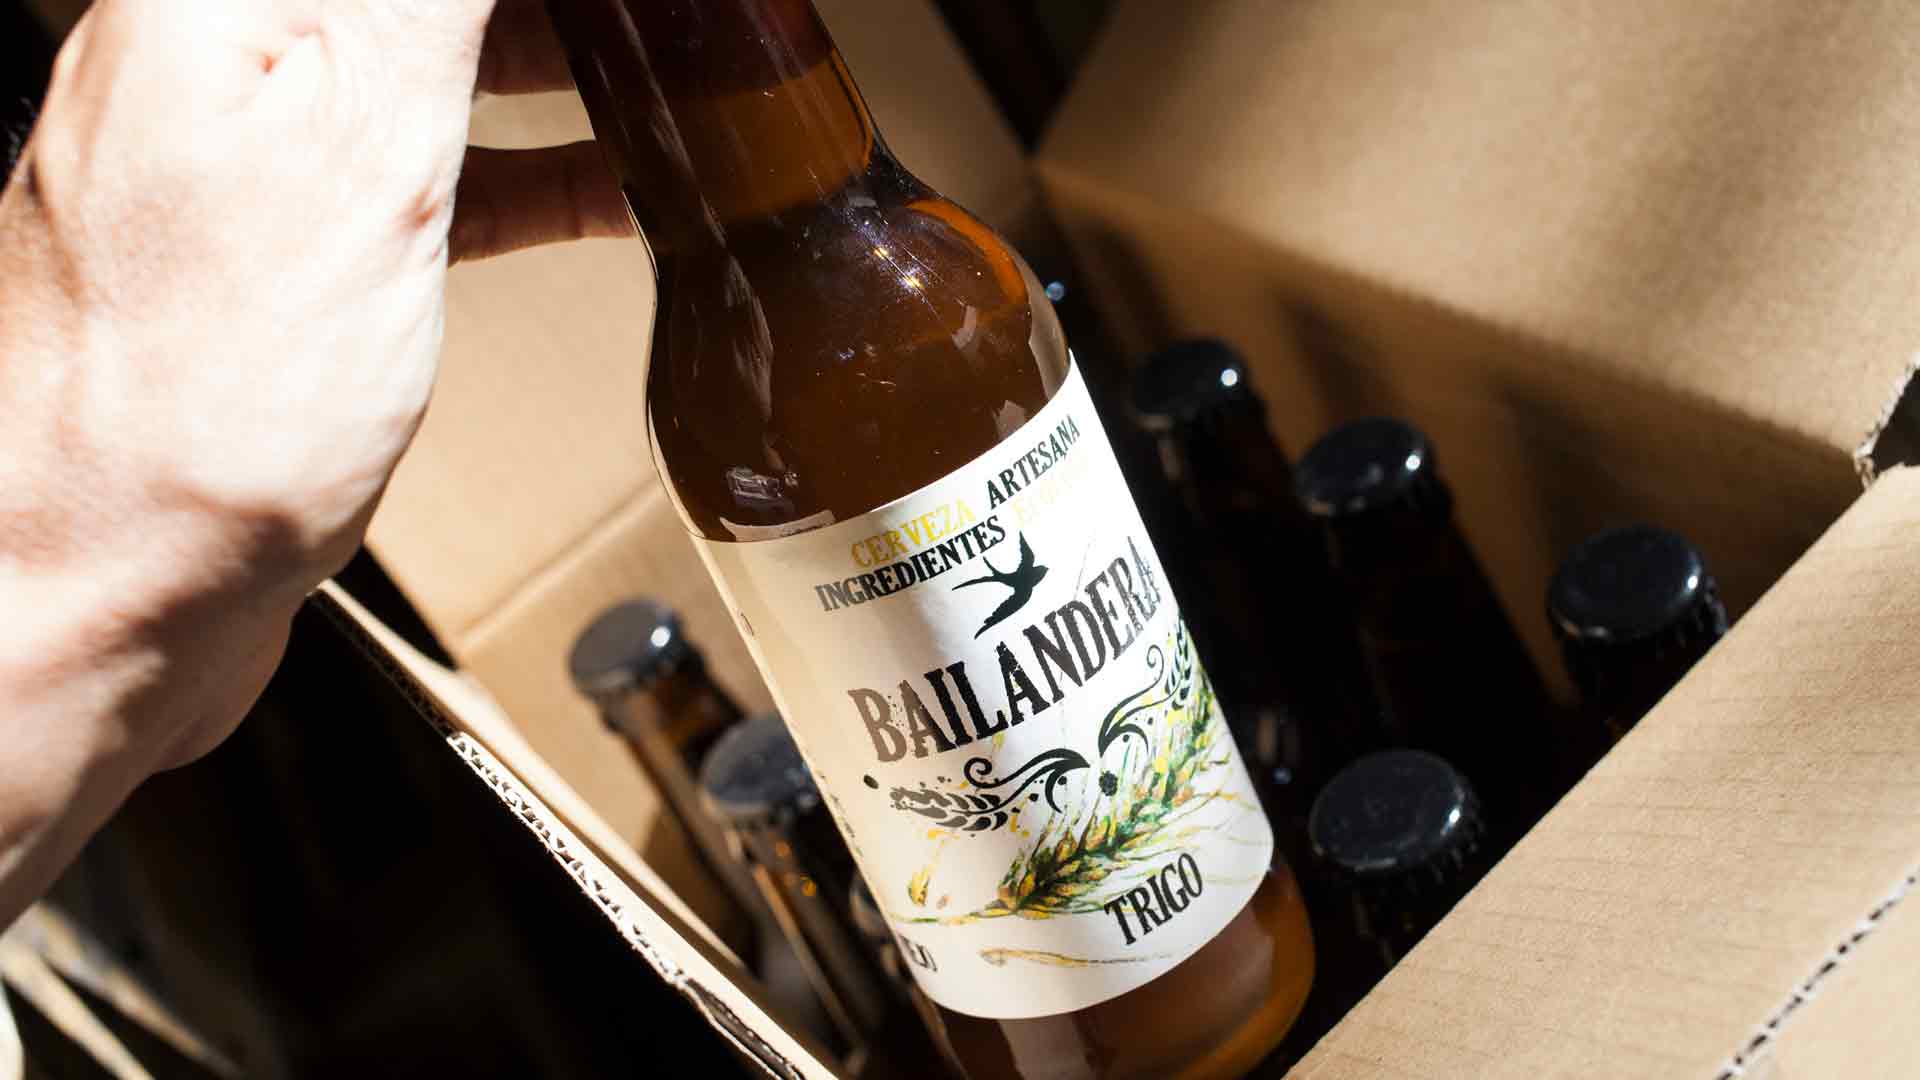 Bailandera, cerveza artesana y ecológica hecha por mujeres